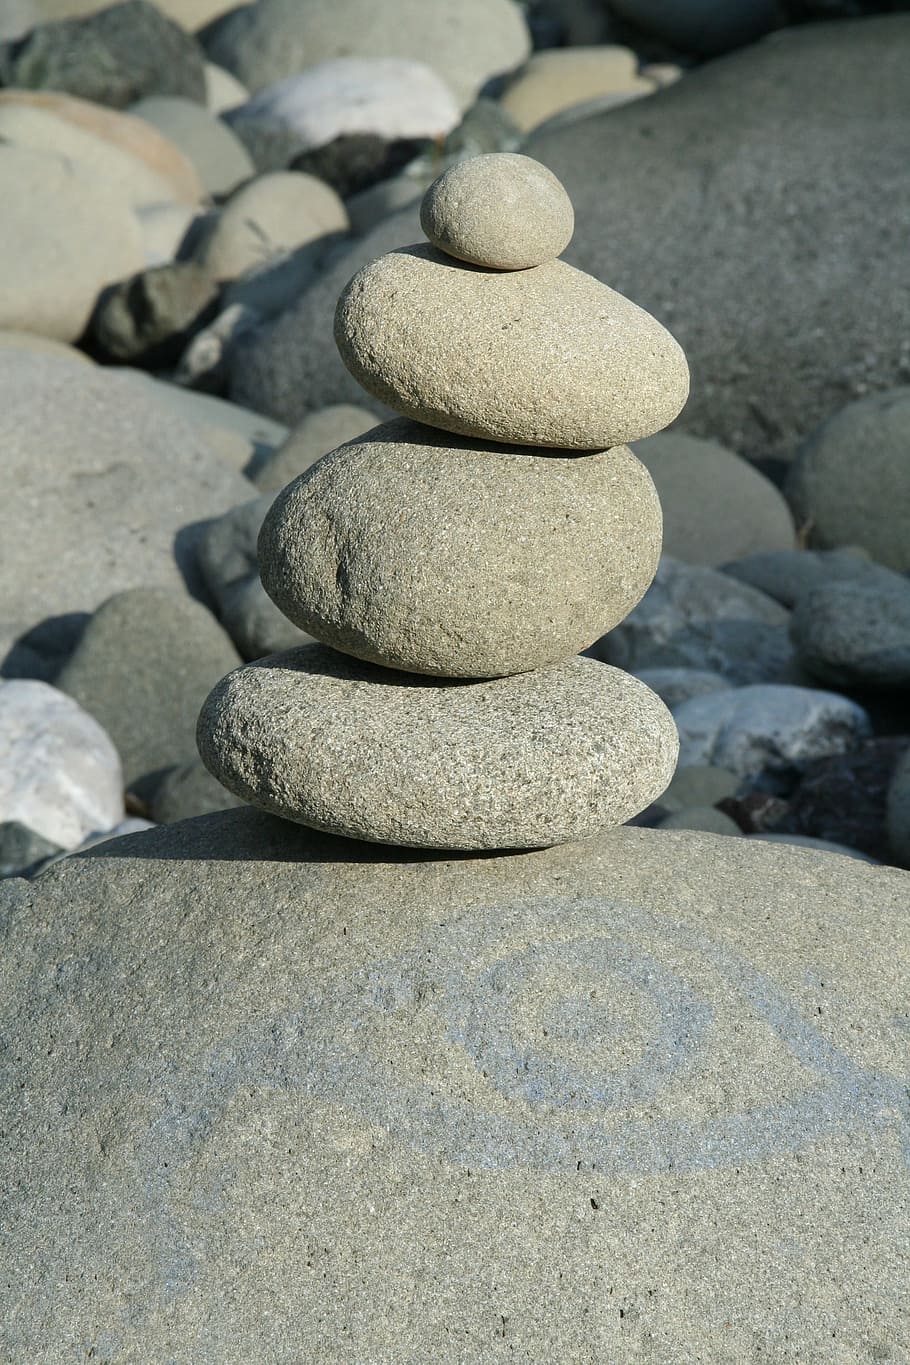 Stones, River, Stone Tower, stones, river, tower, pebble, balance, stone - Object, rock - Object, zen-like